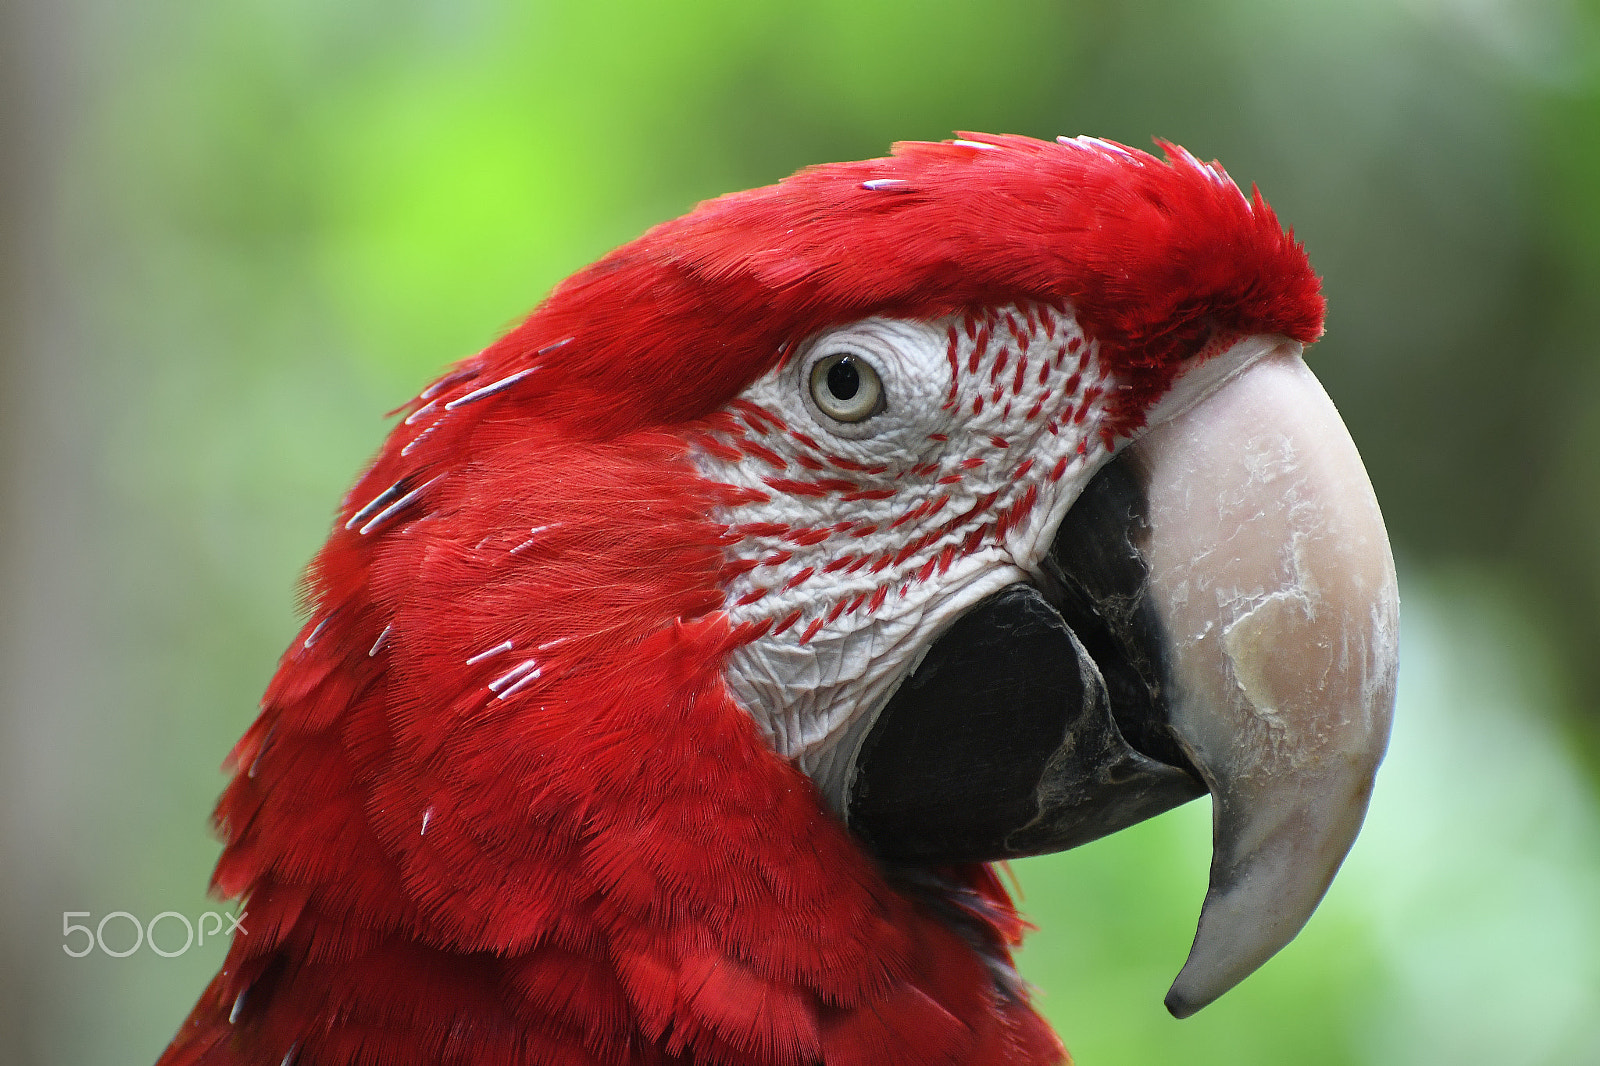 Nikon D500 + Nikon AF-S Nikkor 70-300mm F4.5-5.6G VR sample photo. Red macaw parrot photography